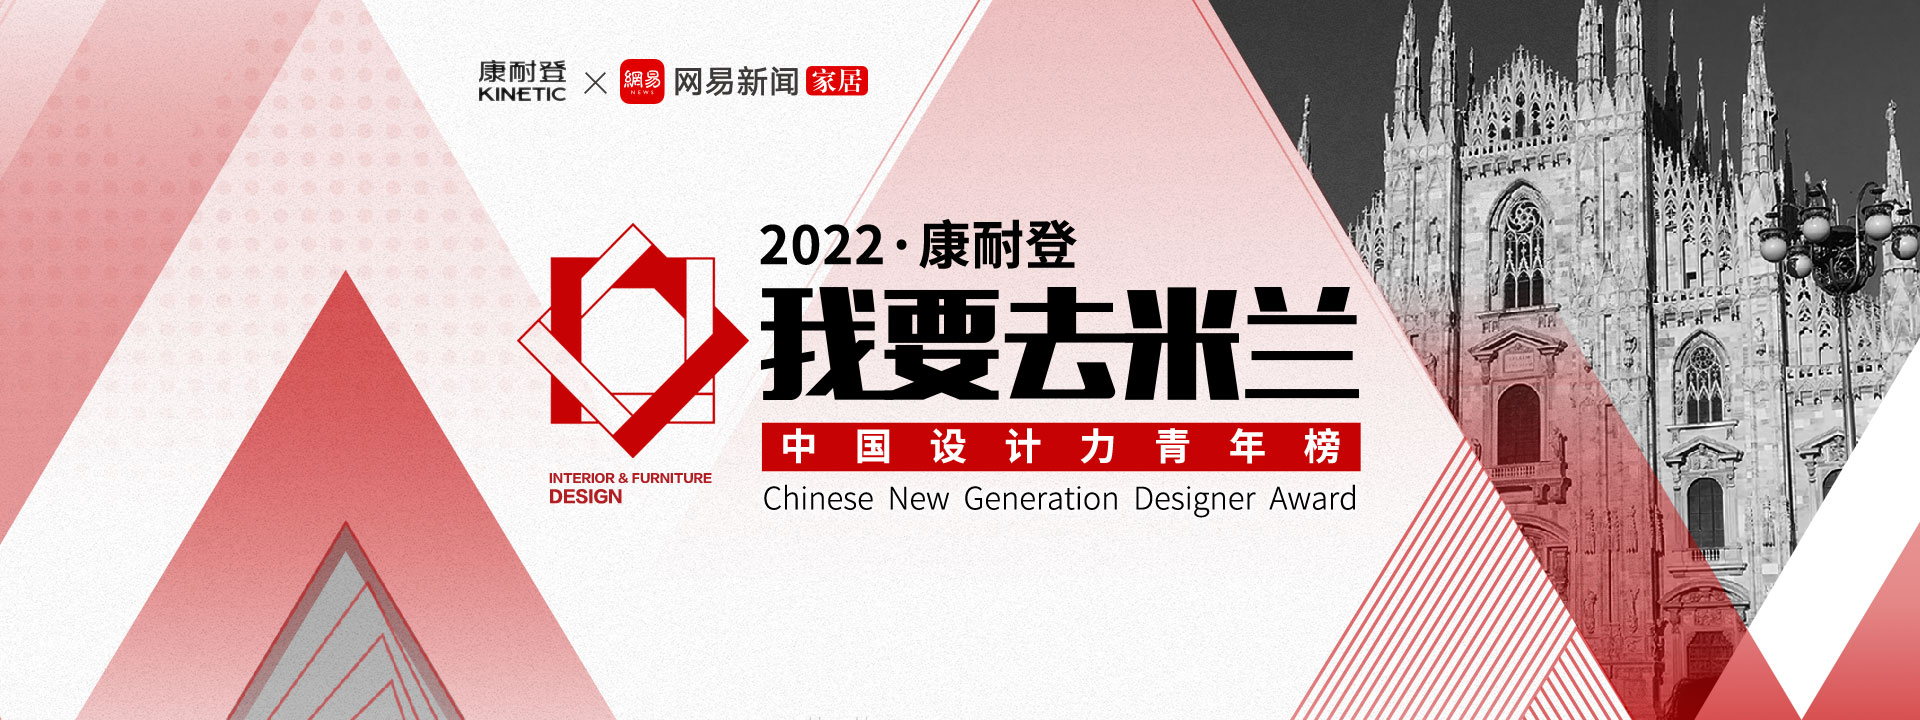 《我要去米兰》2022中国设计力青年榜设计大赛征集